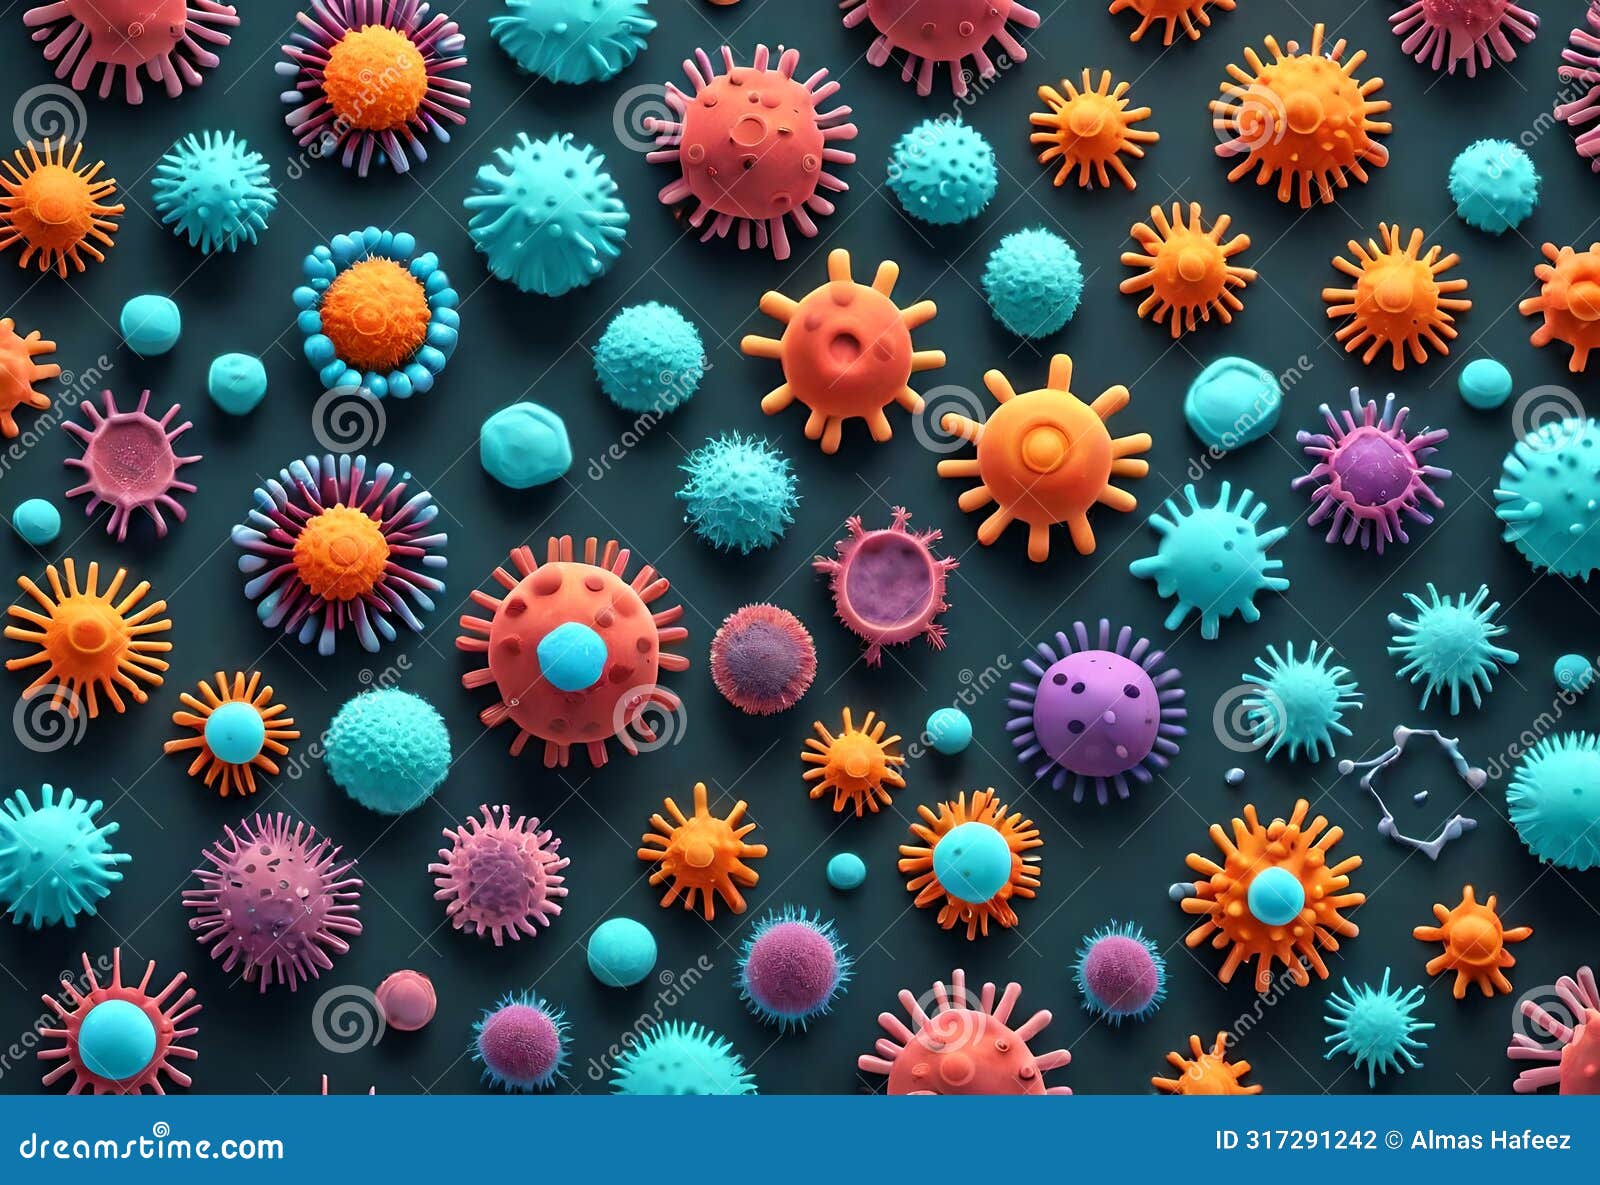 corona virus microorganisms in intricate 3d rendering